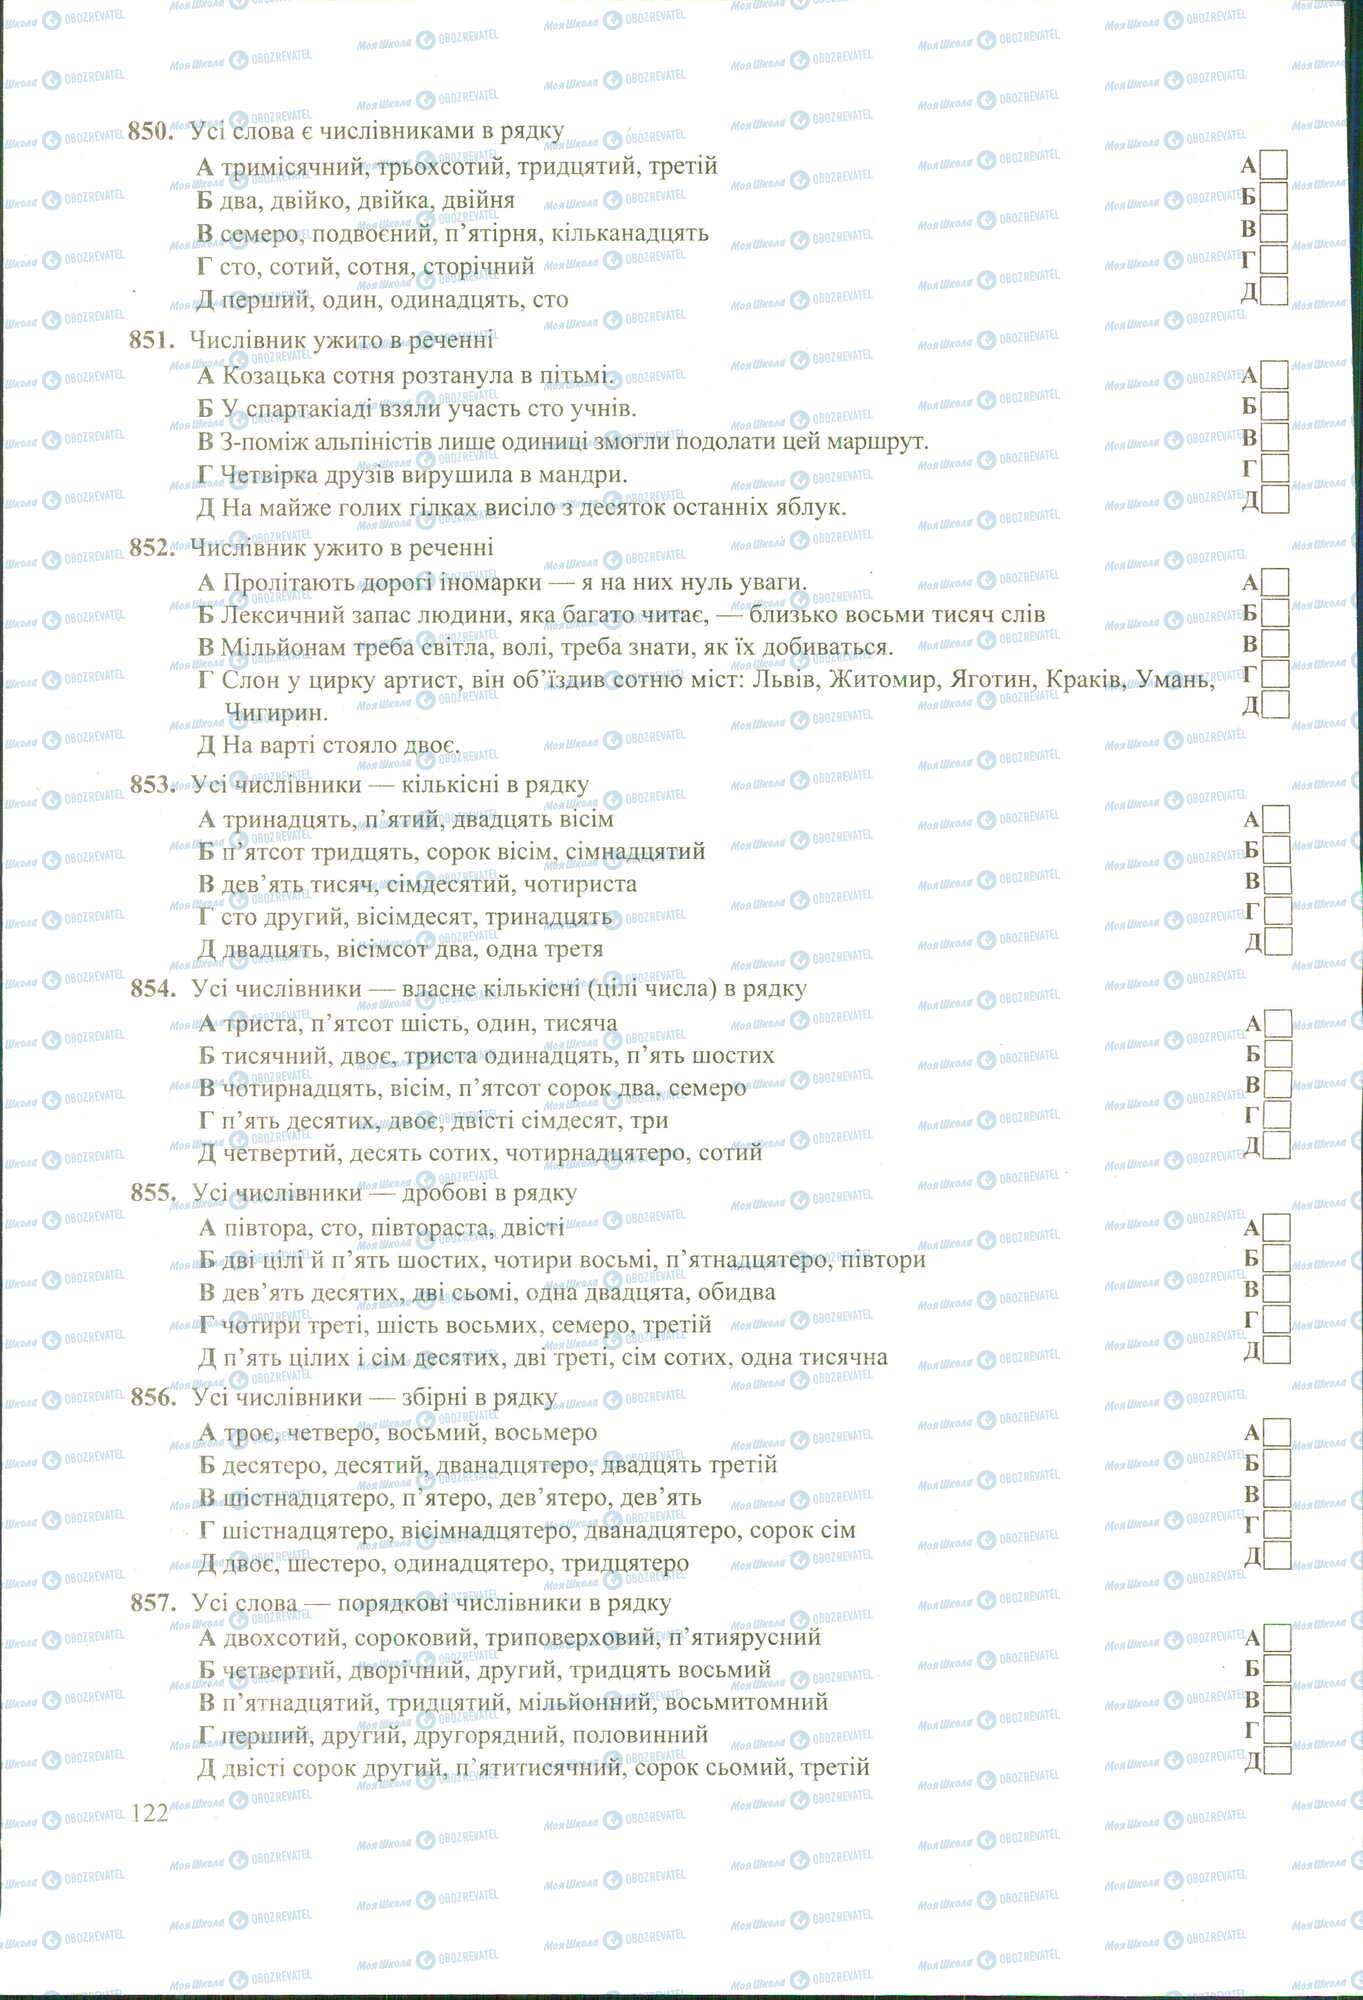 ЗНО Укр мова 11 класс страница 850-857